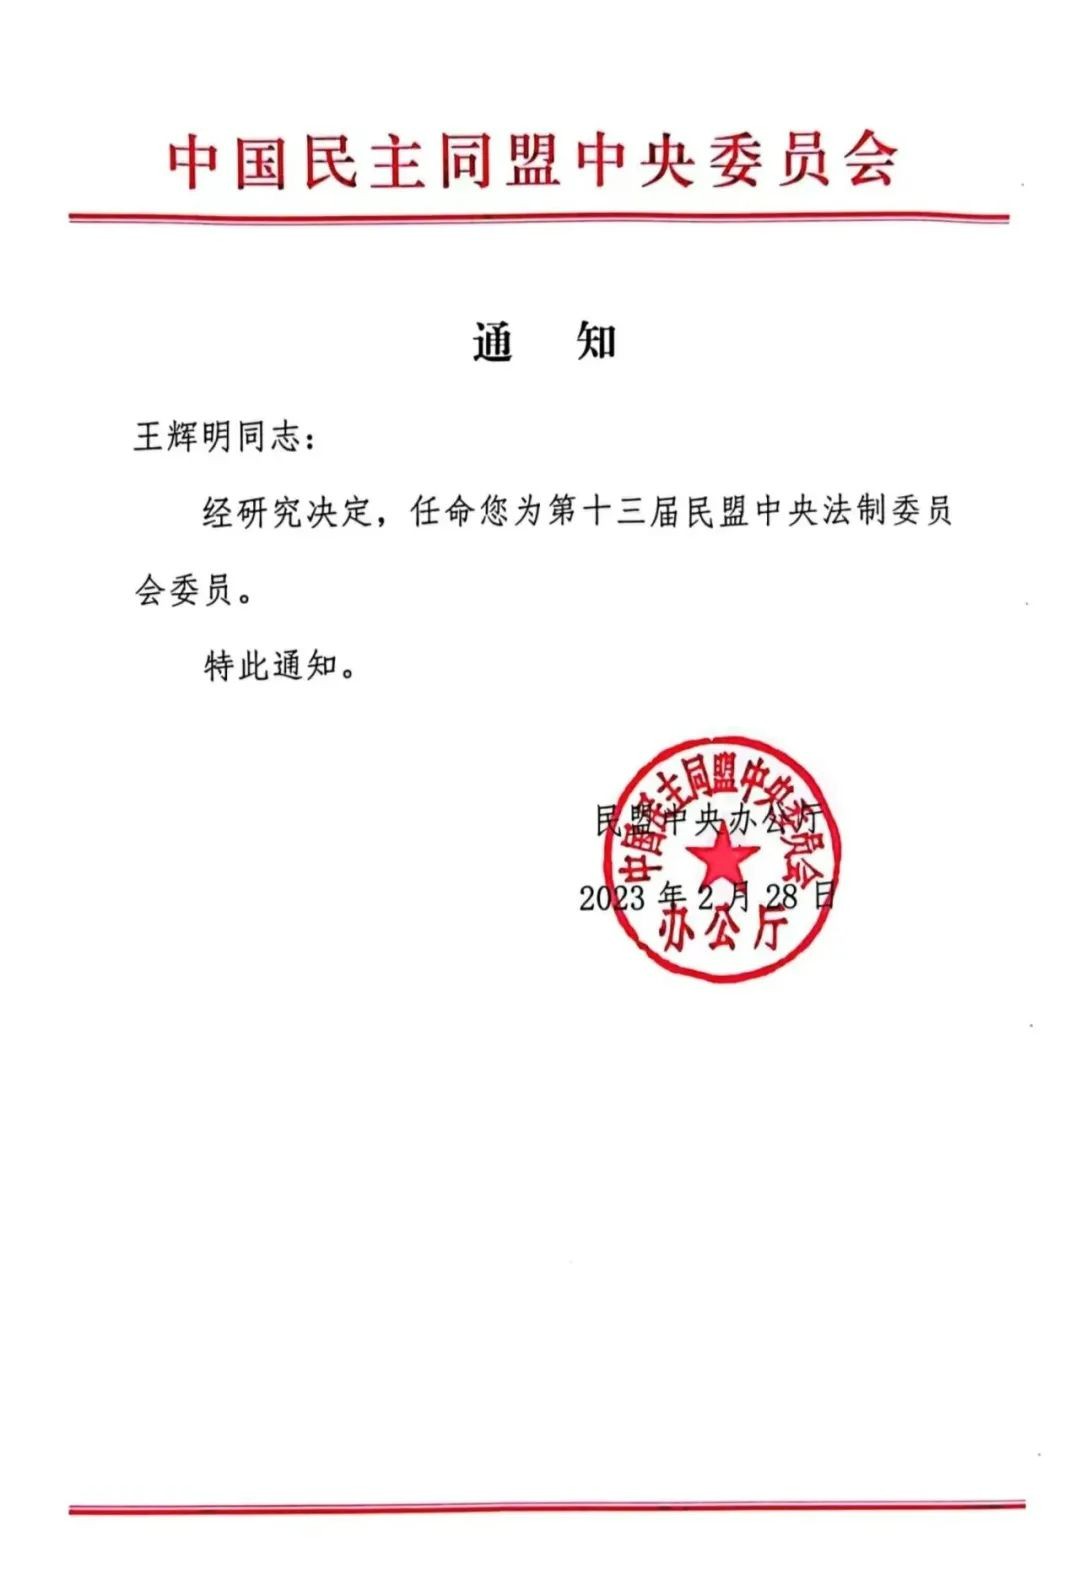 王辉明获民盟中央任命为法制委员会委员